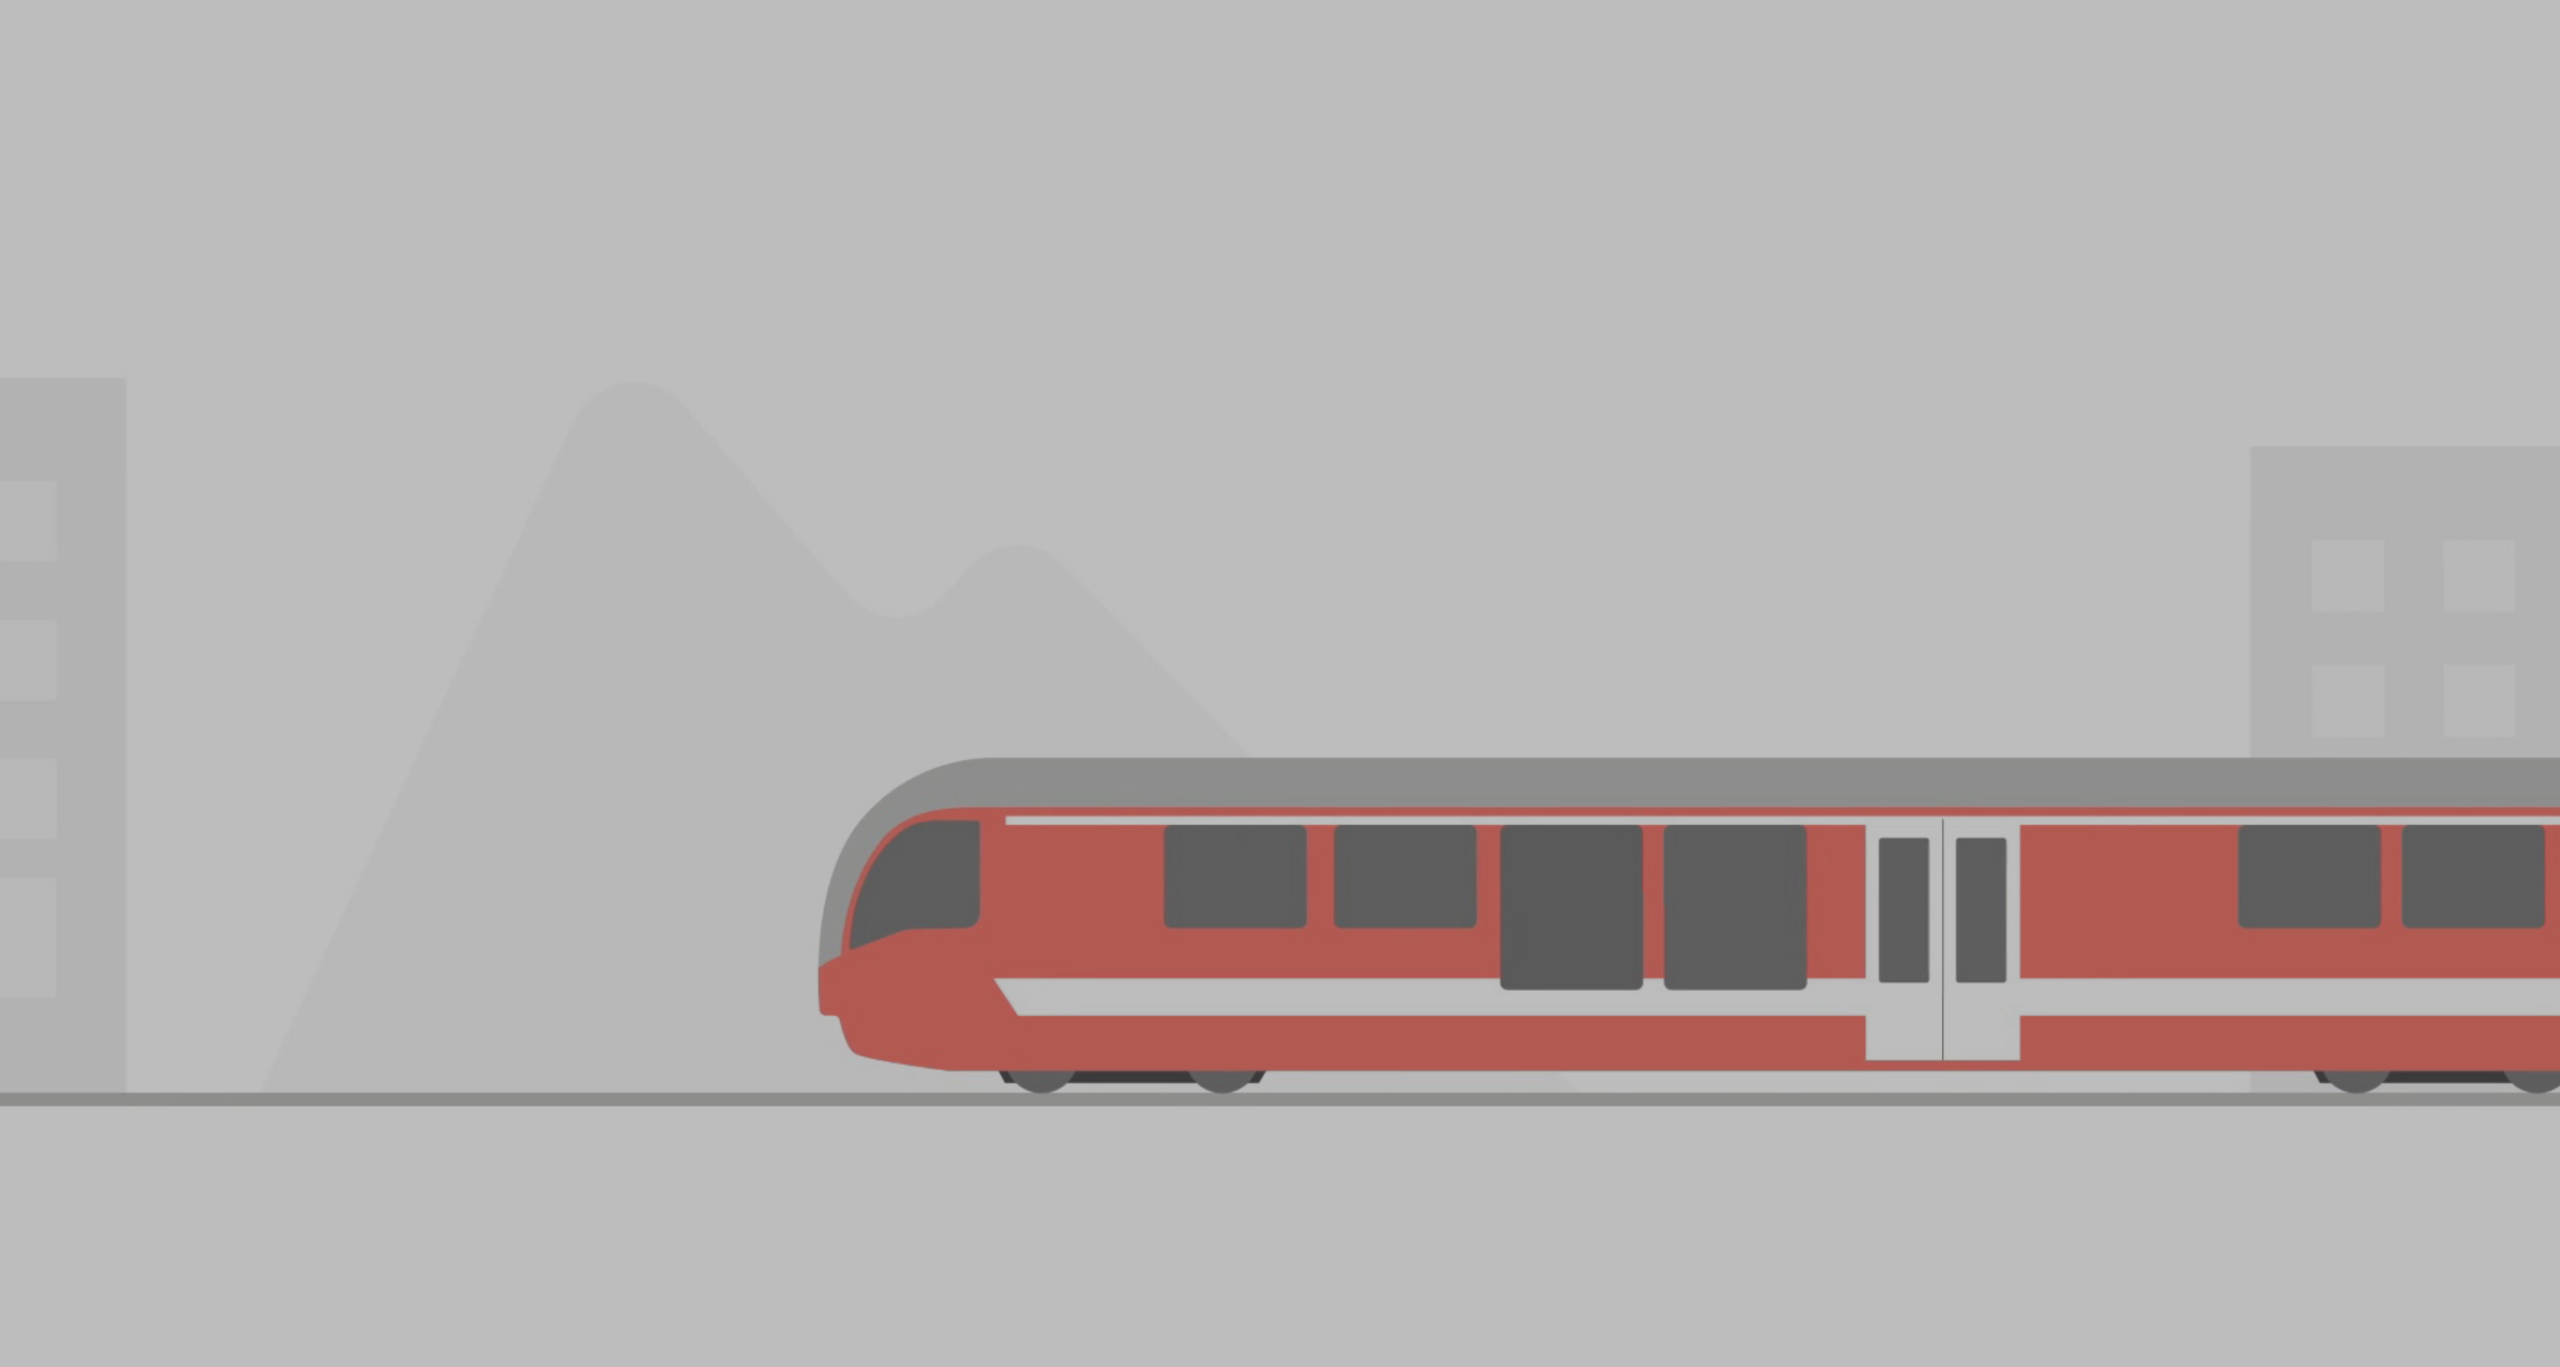 Aperçu de la vidéo en motion design pour ArcExpress montrant un train qui roule